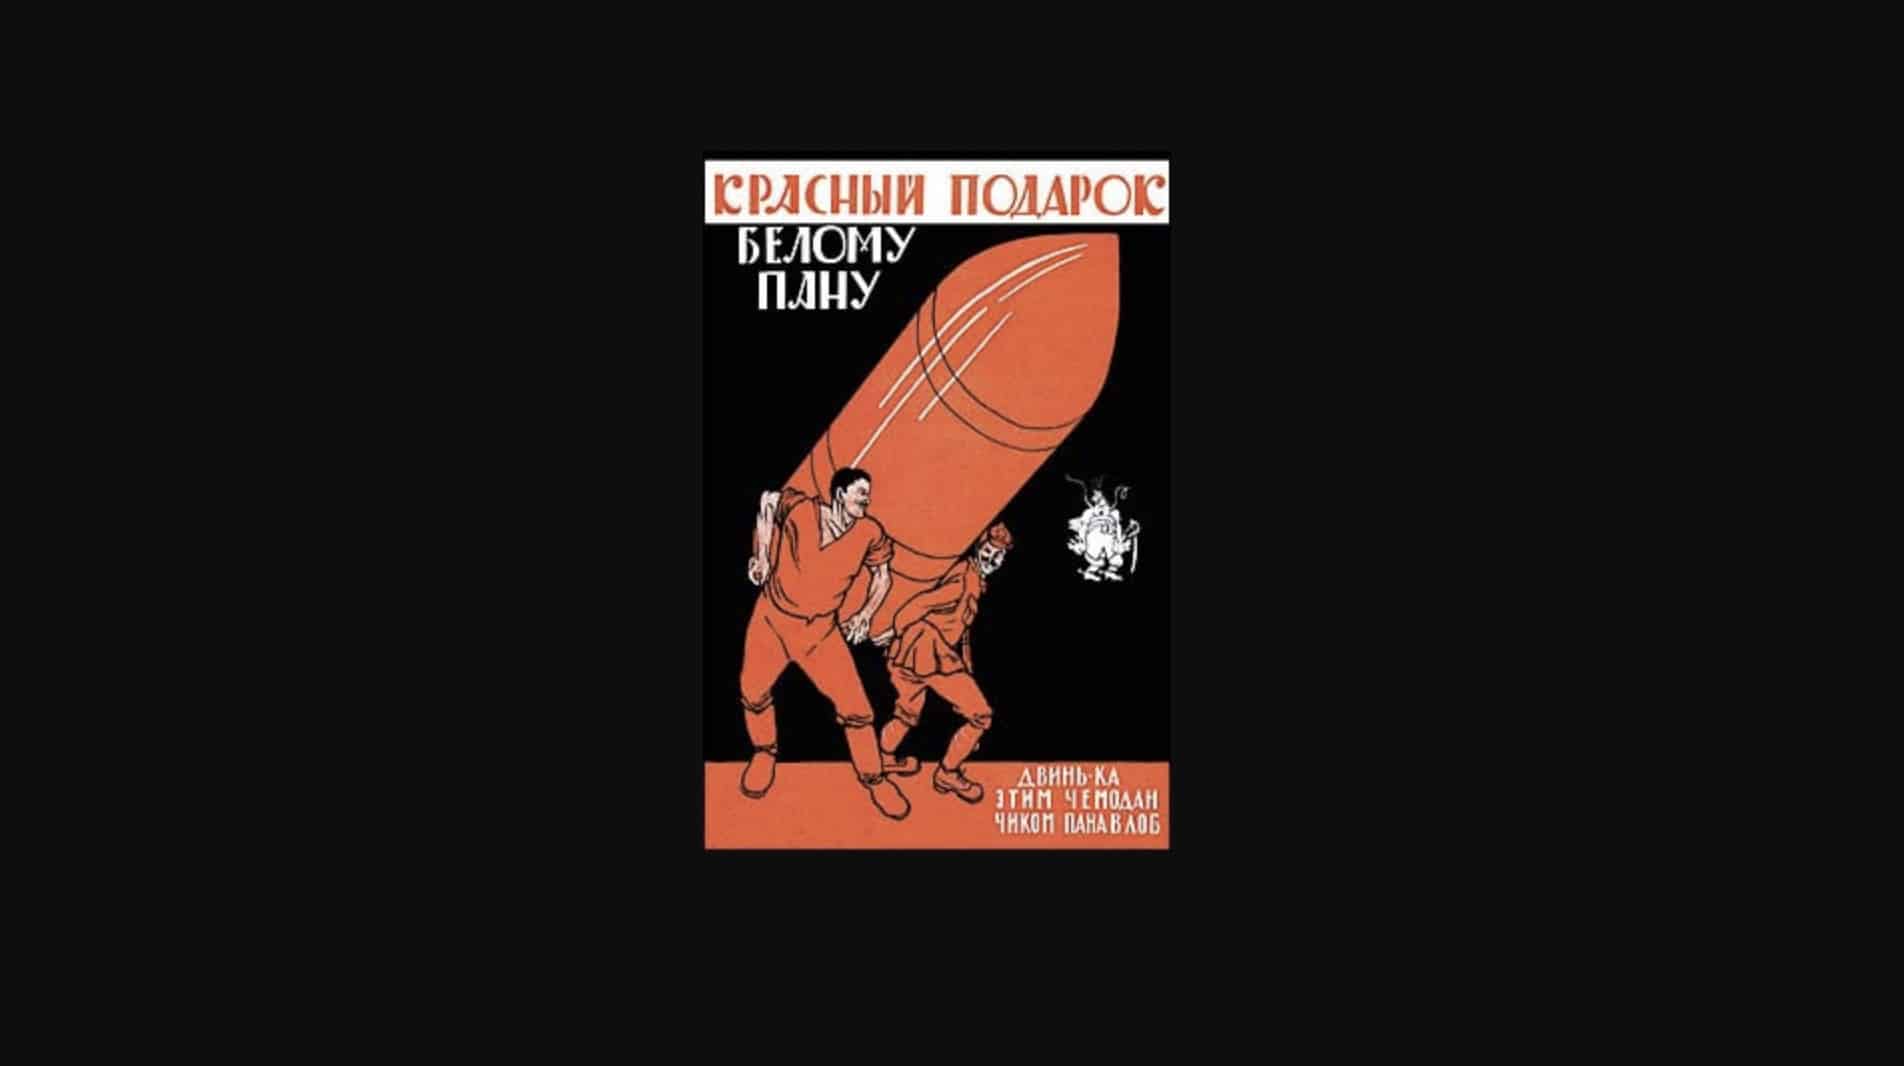 «Красный подарок белому пану». Советско-польская война: 1919-1921 гг. (Sovposters.ru, при поддержке ЮНЕСКО)